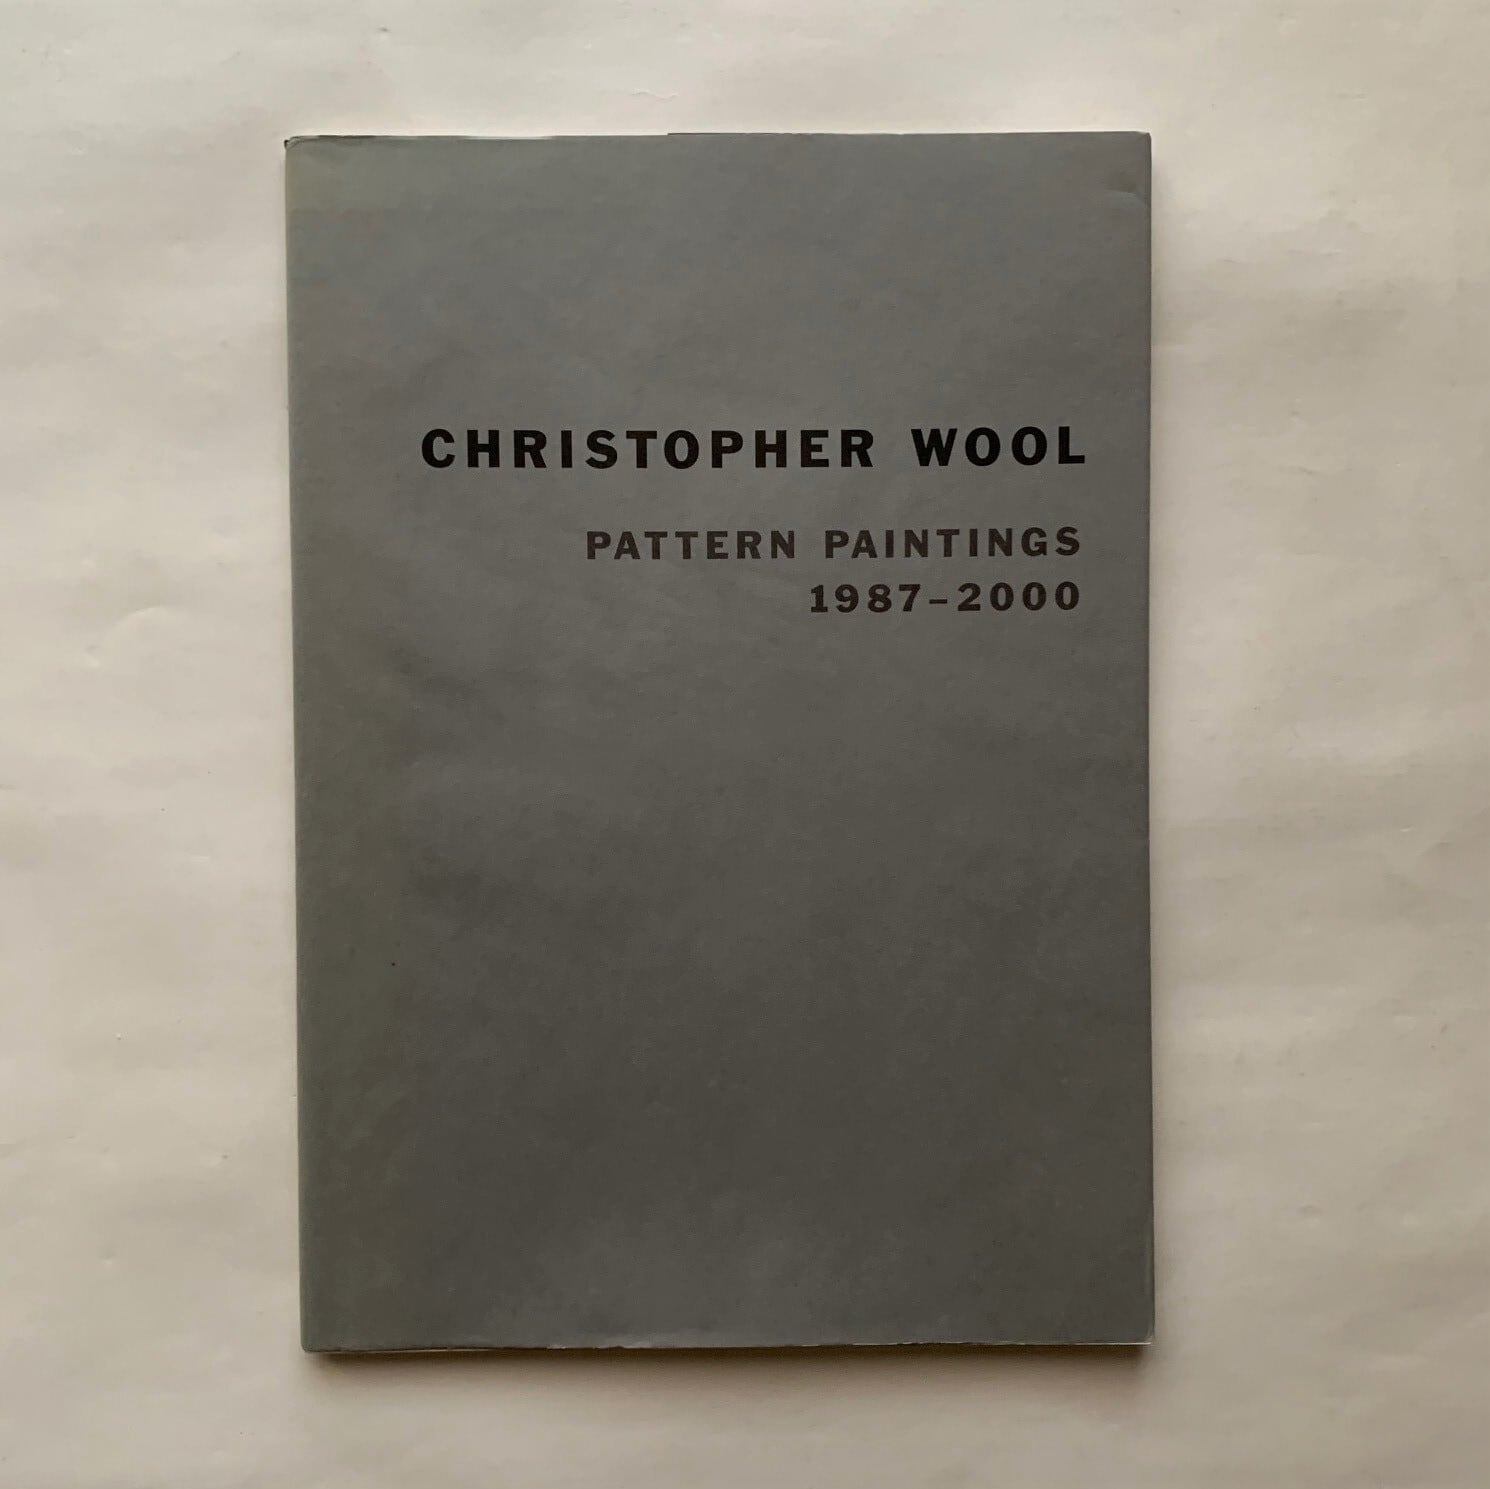 Pattern Paintings 1987-2000 / Christopher Wool